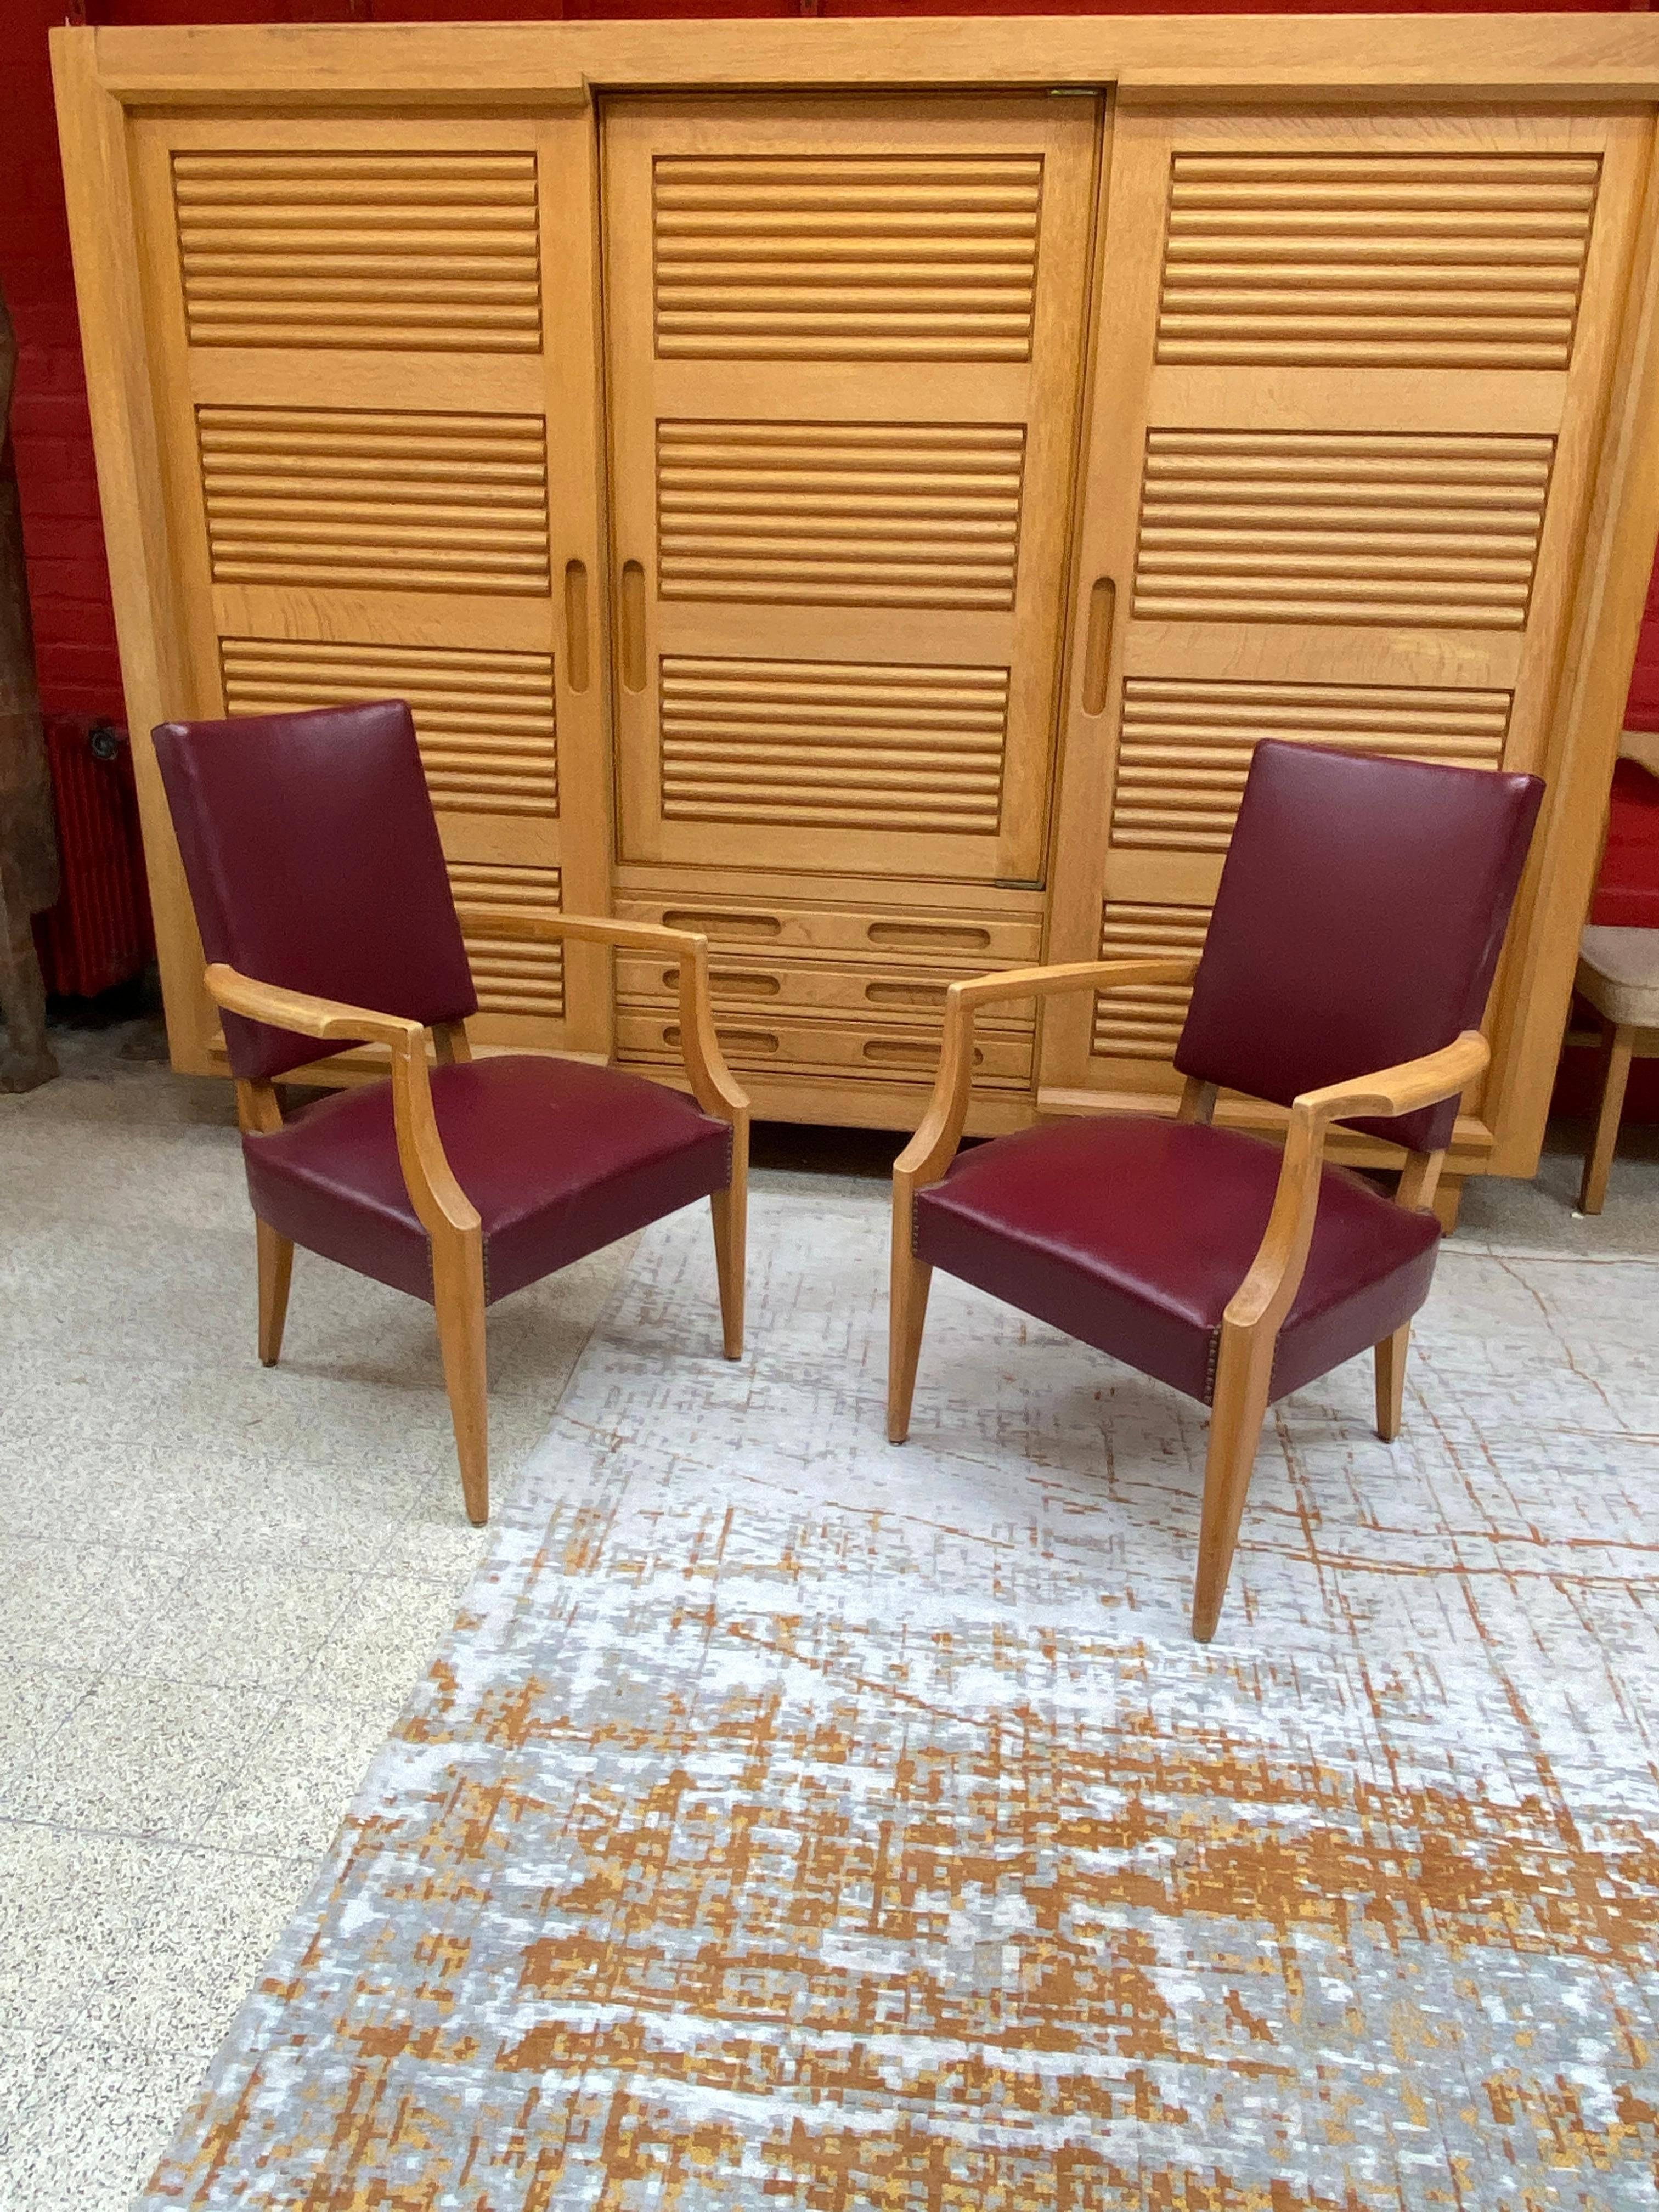 2 Fauteuil Art Déco français des années 1940 dans le style d'André Arbus.
Plutôt en bon état, malheureusement il y a un petit trou sur l'assise d'un fauteuil.